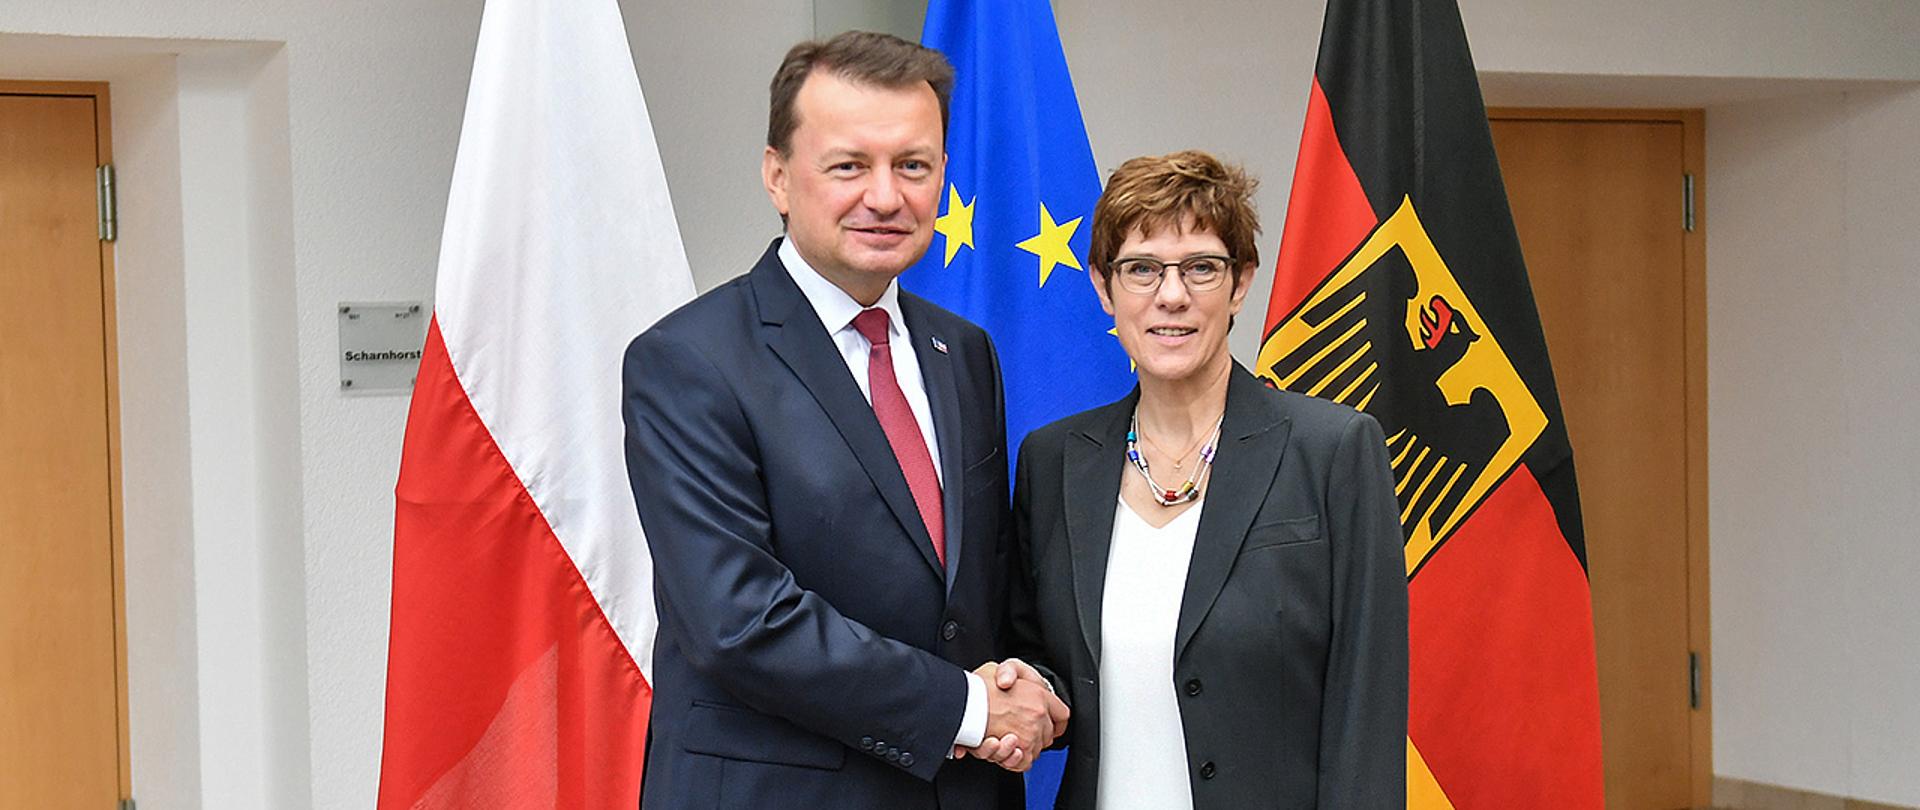 Minister M.Błaszczak wita się z minister Annegret Kramp-Karrenbauer w Berlinie